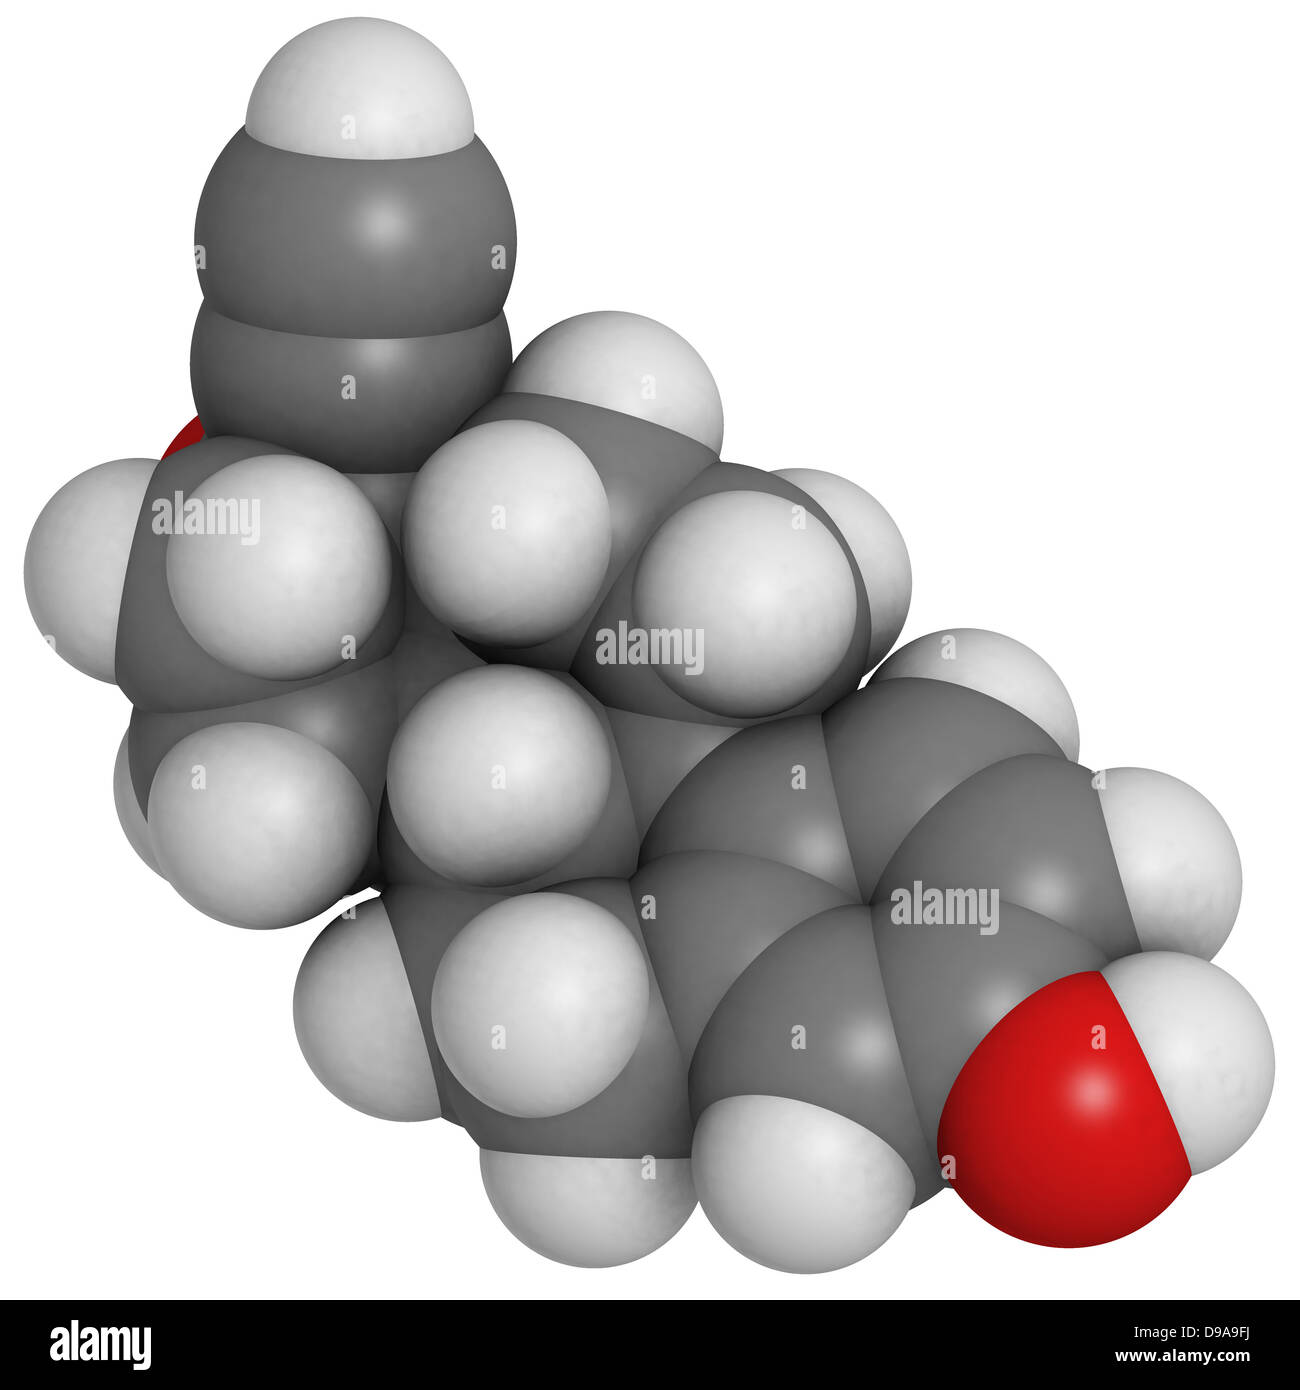 L'éthinylestradiol (EE) anticonceptive hormone, le modèle moléculaire. Les atomes sont représentés comme des sphères avec codage couleur classiques Banque D'Images